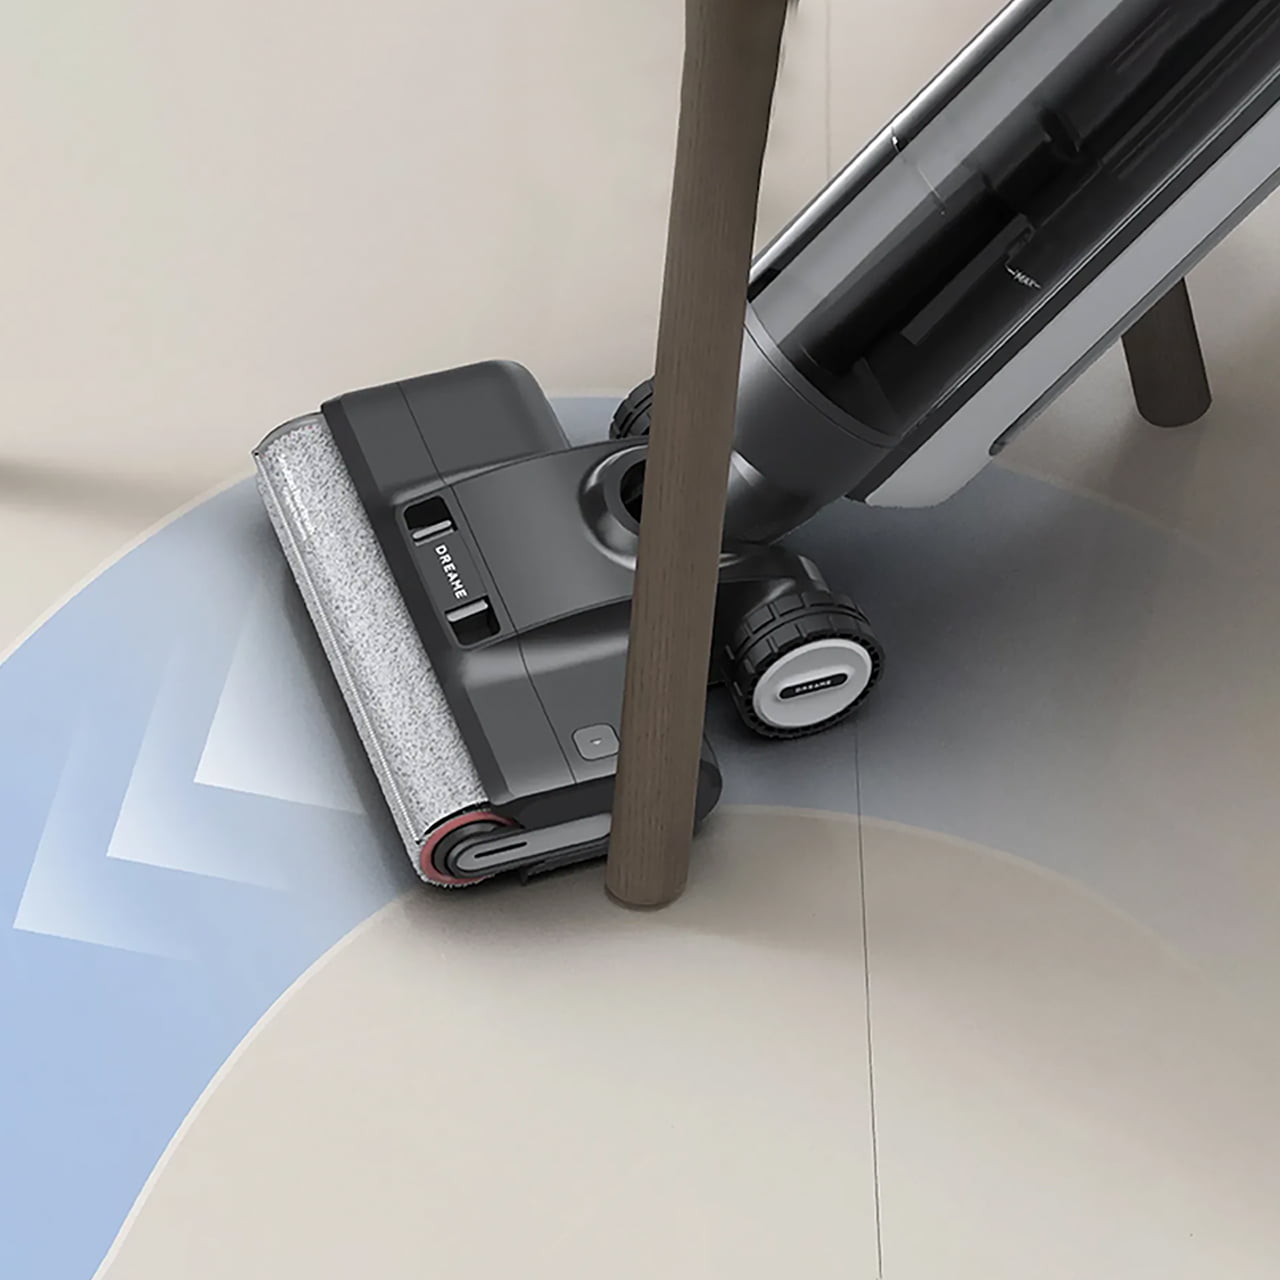 Обновлённая конструкция роликовой щётки Dreame H13 Pro позволяет мыть пол вплотную к стенам и мебели